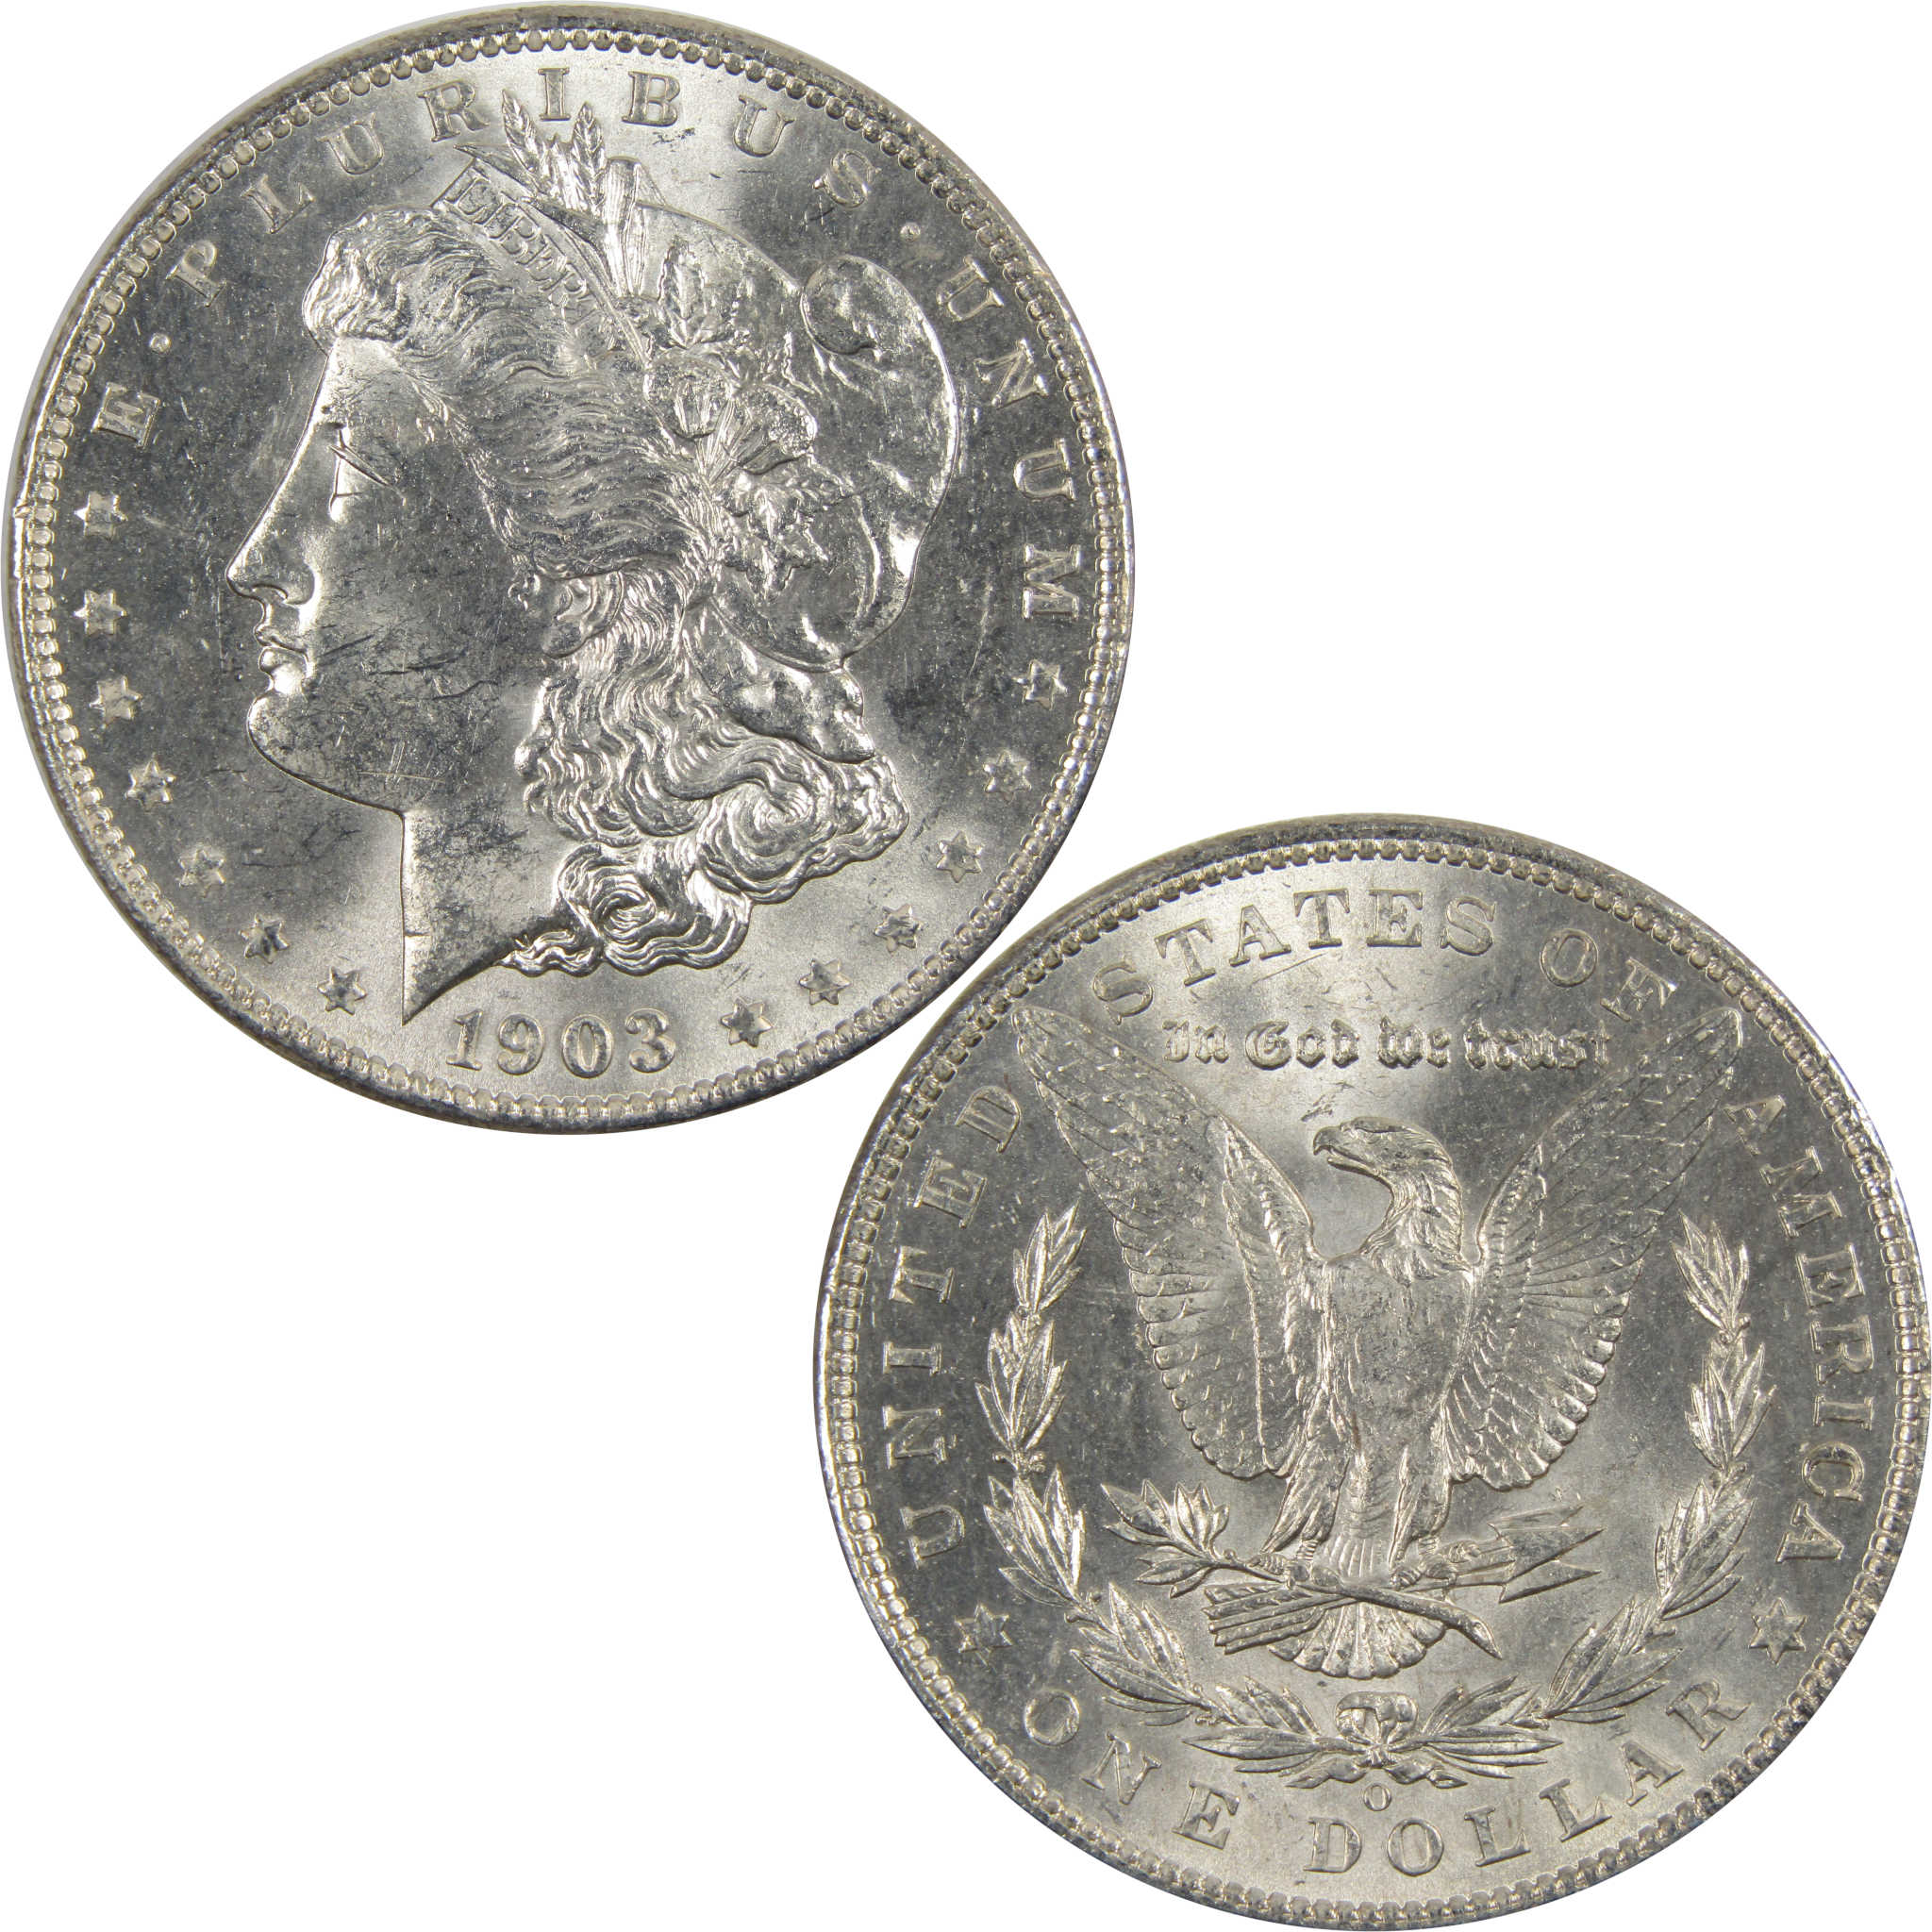 1903 O Morgan Dollar BU Choice Uncirculated 90% Silver $1 SKU:I7907 - Morgan coin - Morgan silver dollar - Morgan silver dollar for sale - Profile Coins &amp; Collectibles